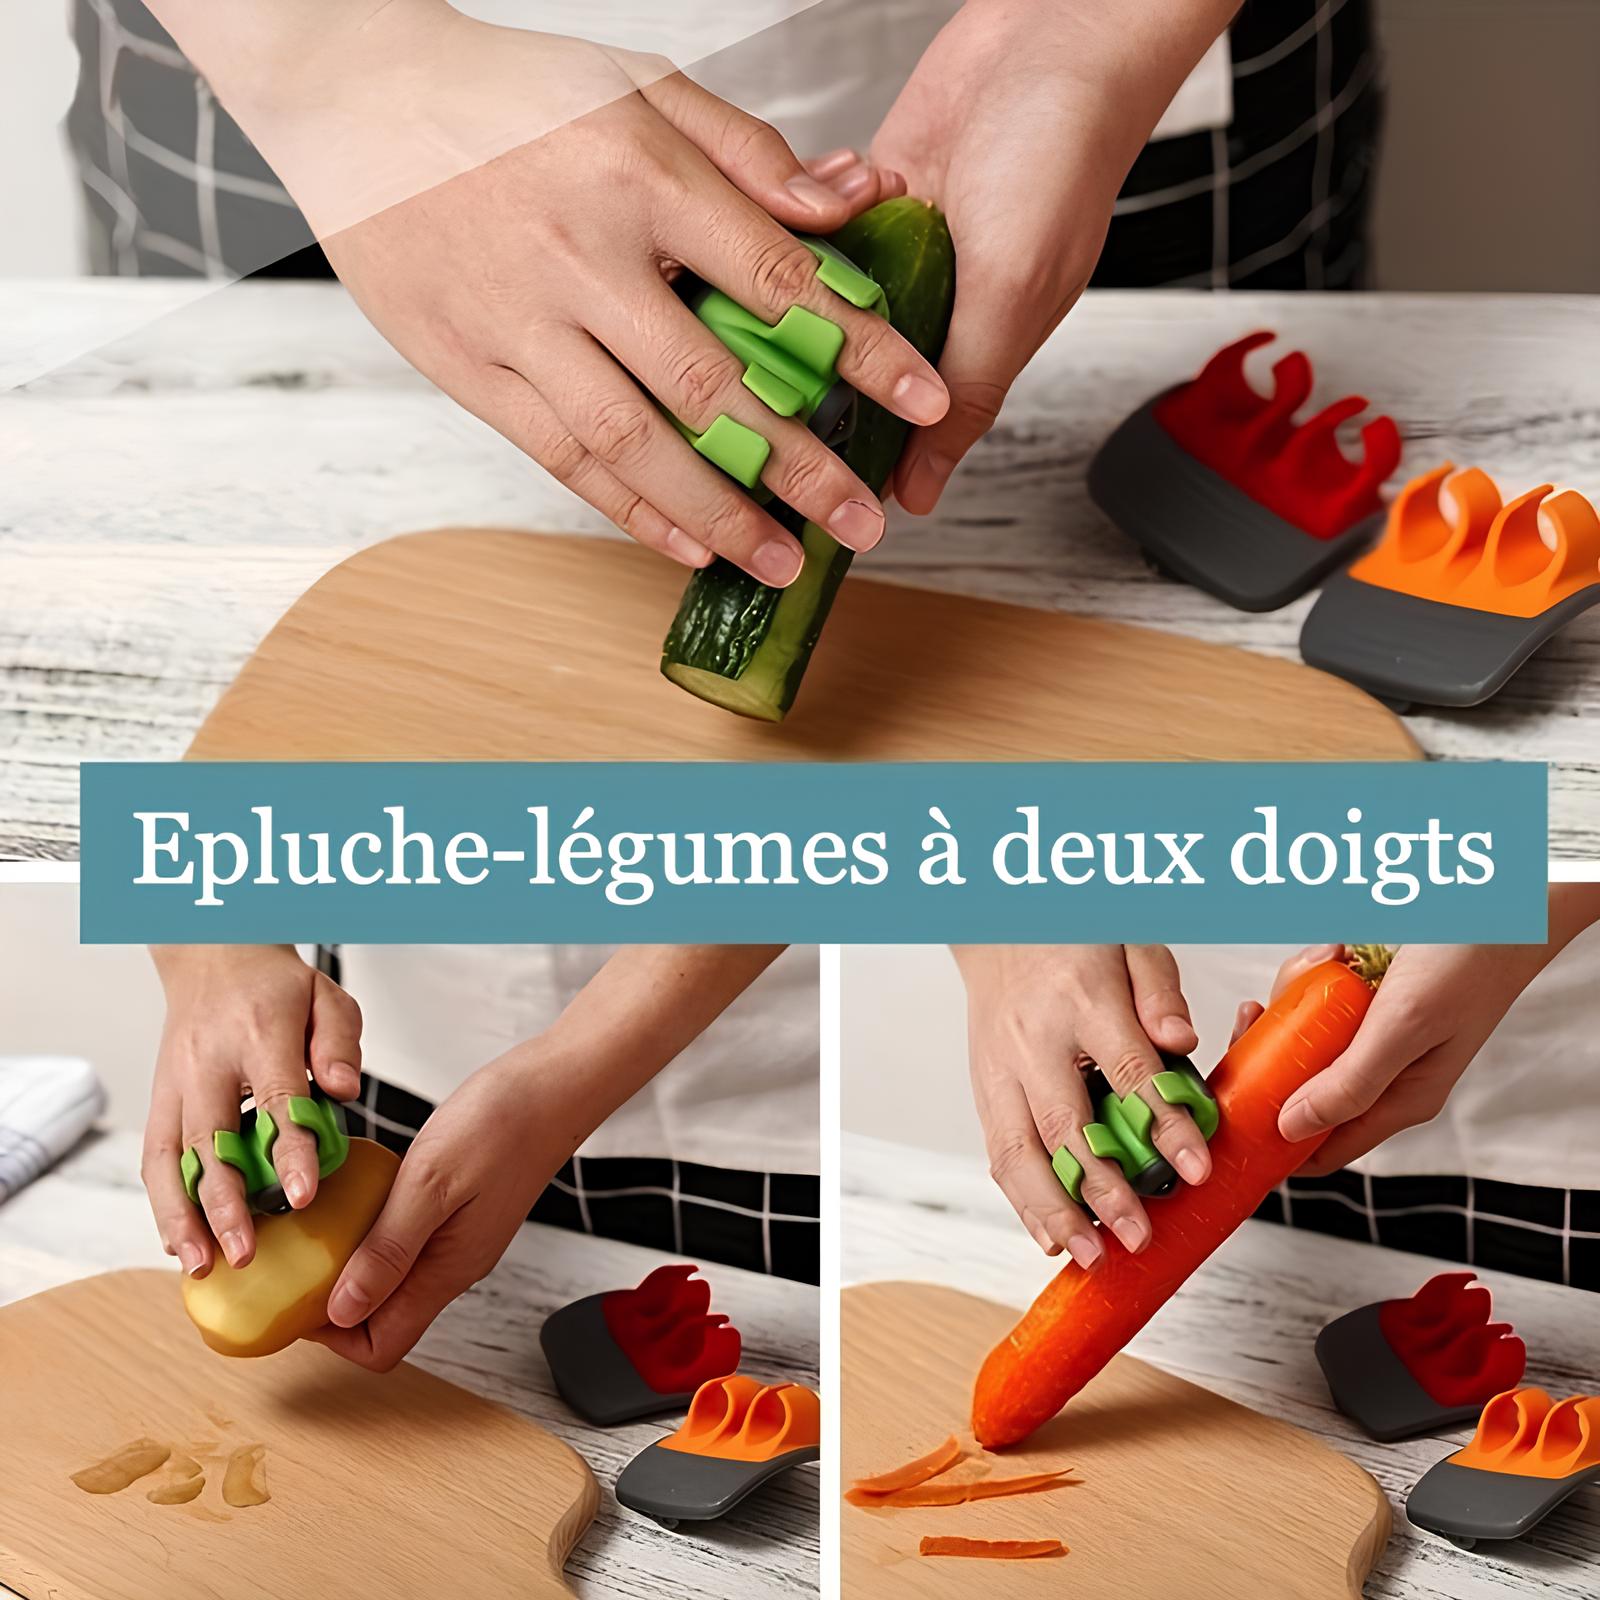 Epluche-légumes à deux doigts - UstensilesCulinaires